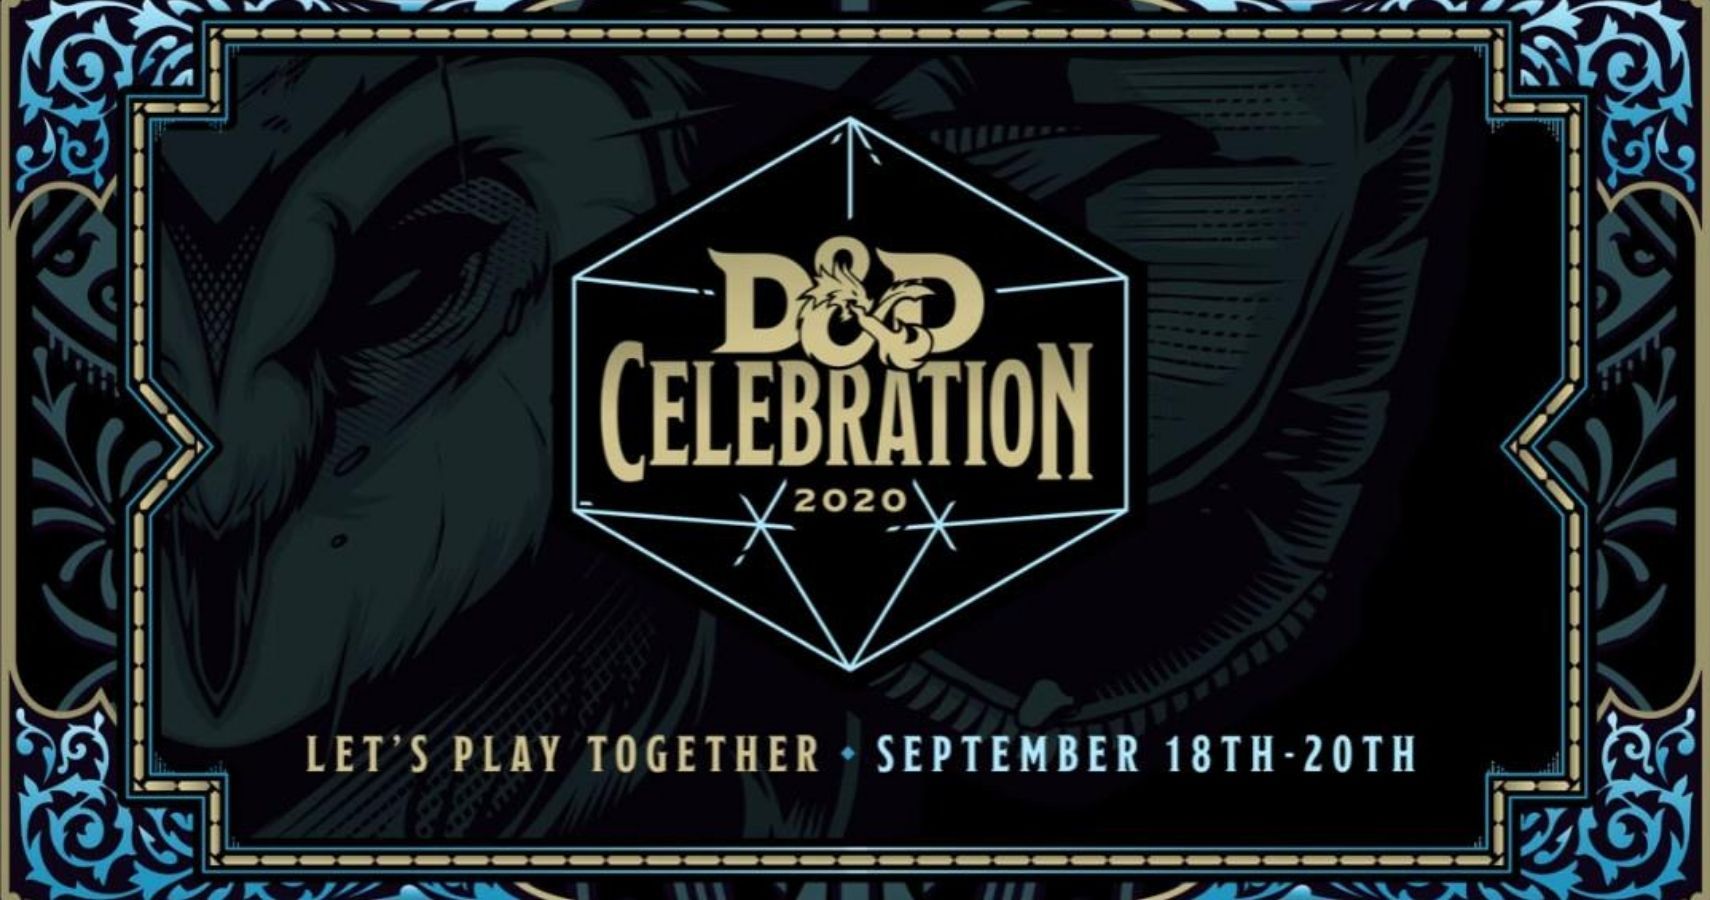 D&D Celebration 2020 feature image